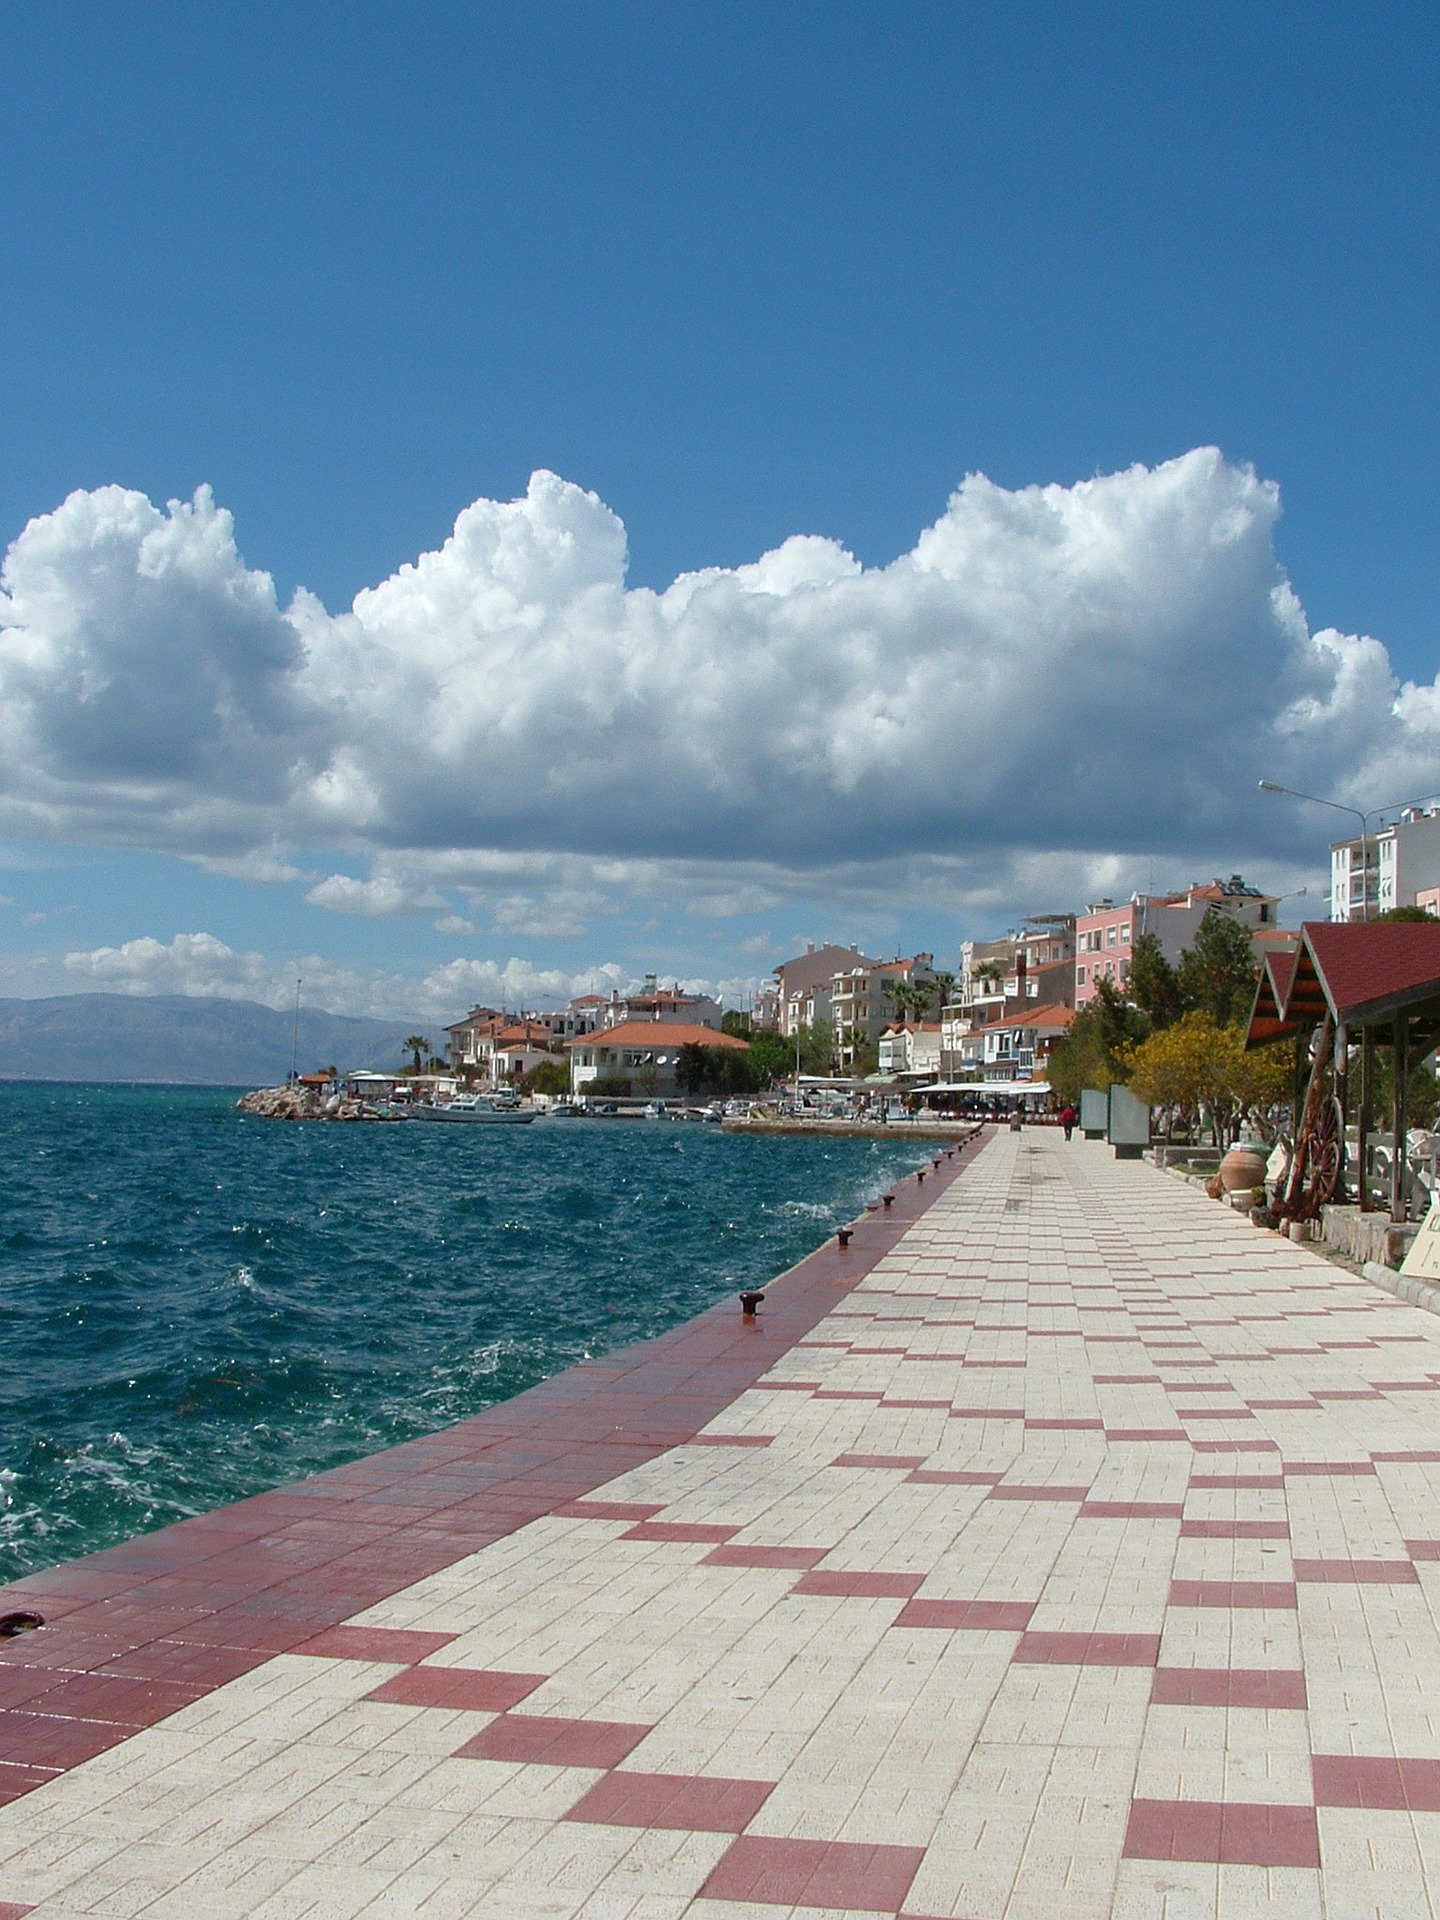 Самые популярные курорты Эгейского моря: Чешме